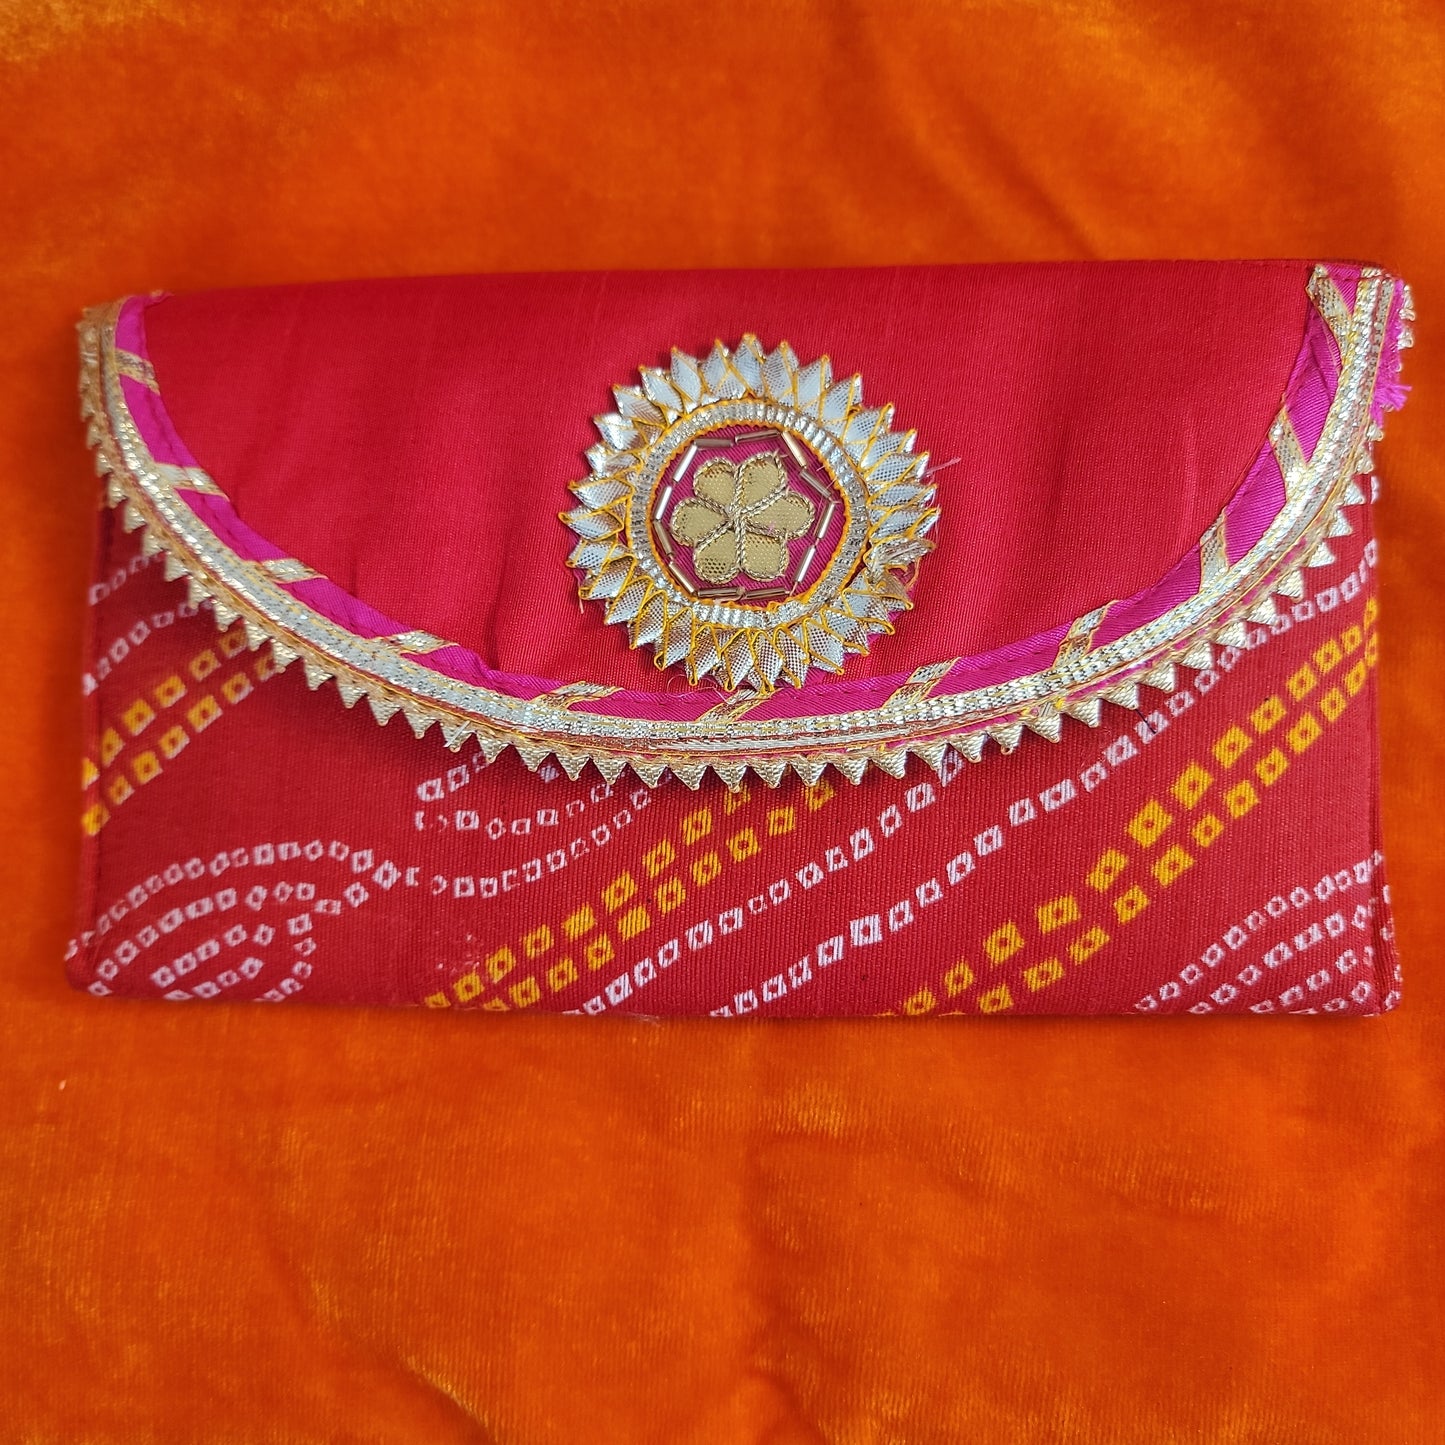 Badhani clutch (purse)